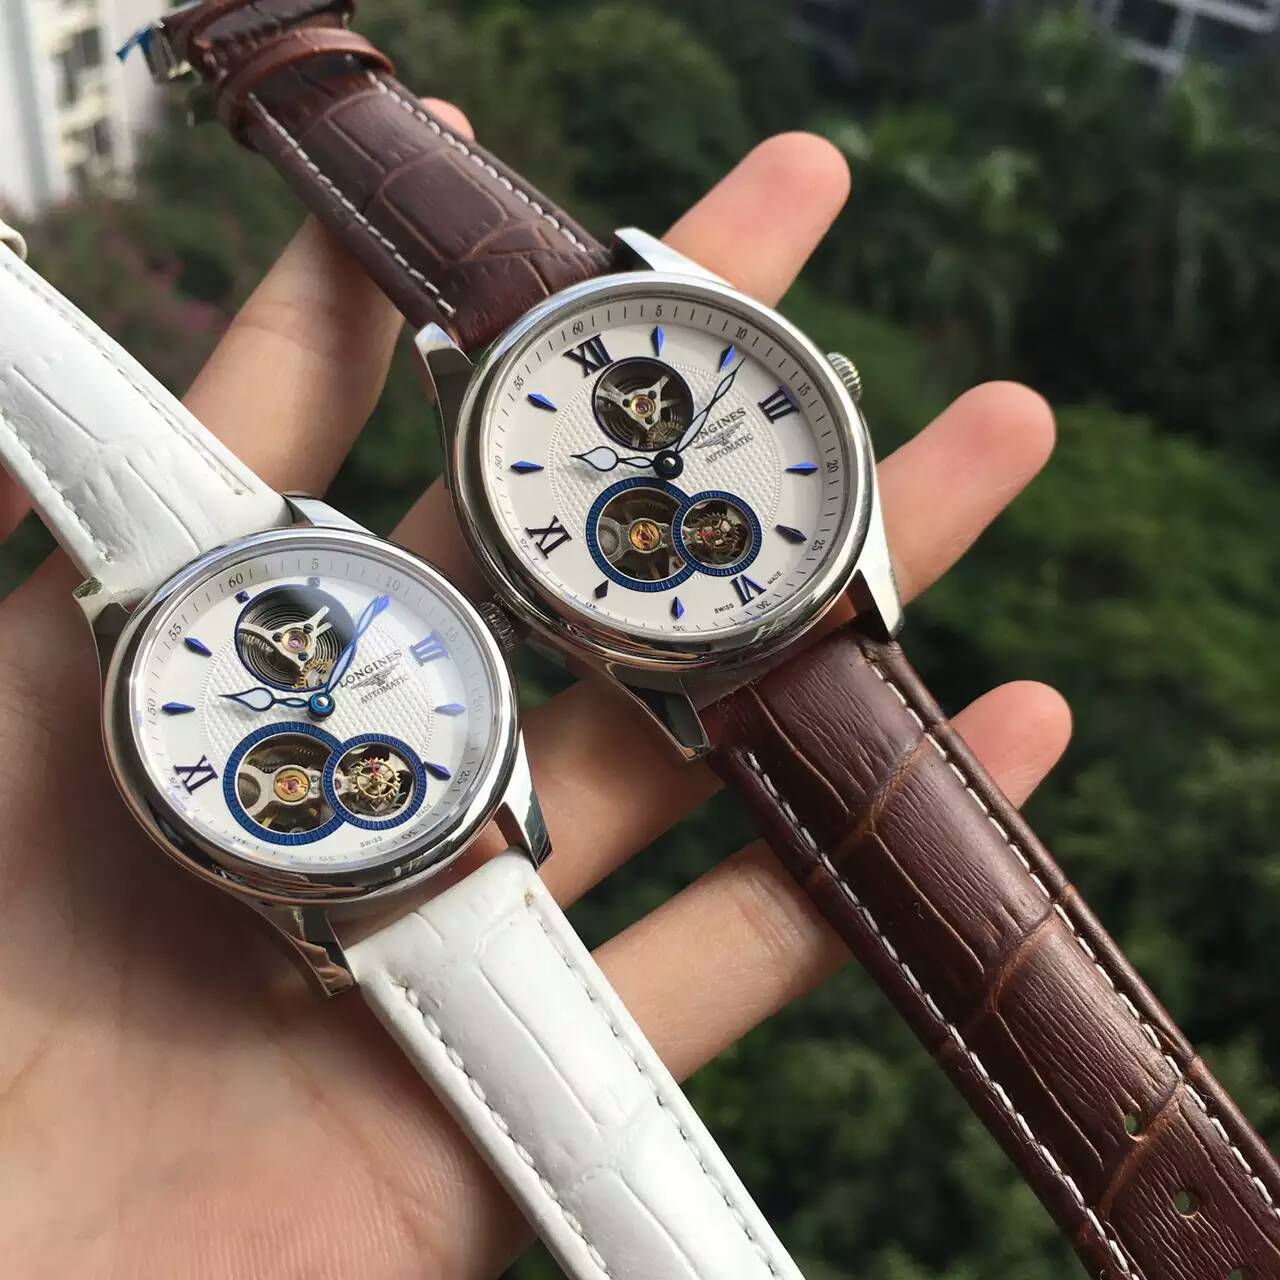 浪琴 精品情侶腕錶 頂級機械機芯 藍寶石水晶鏡面 真牛皮錶帶 生活防水-rhid-116844